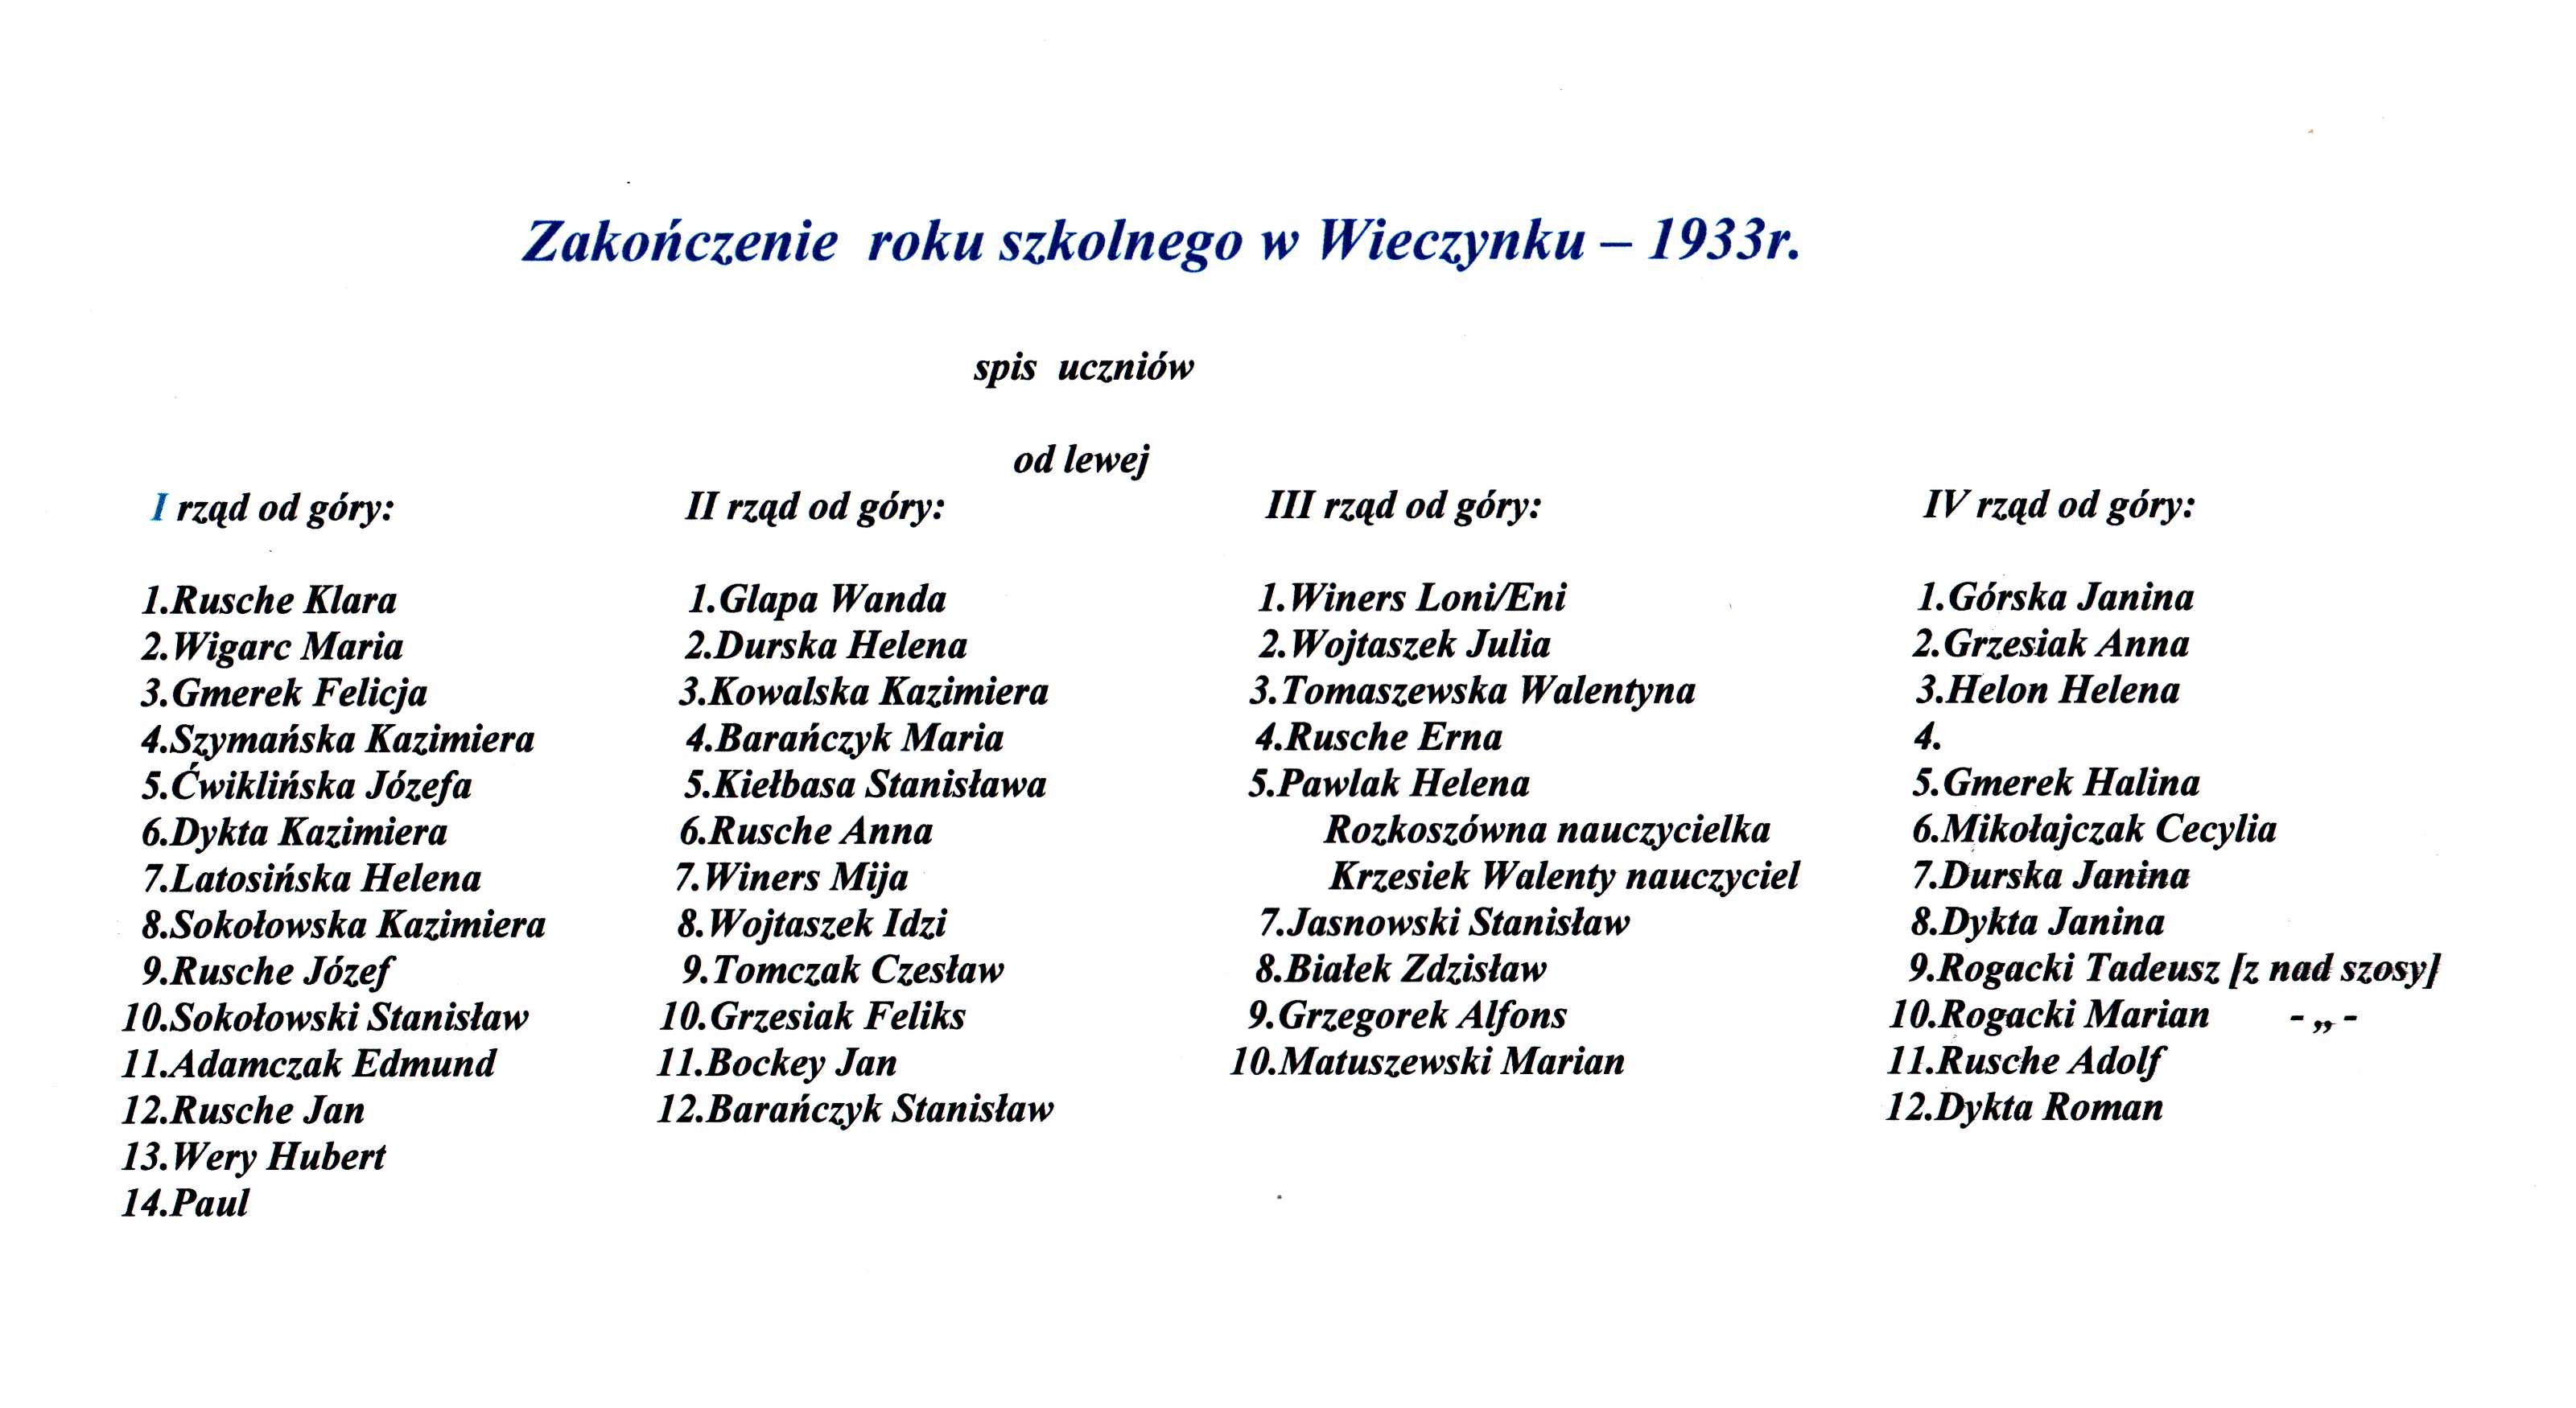 kronika wieczyna - aacg- Zakończenie roku szkolnego w Wieczynku - 1933r.jpg